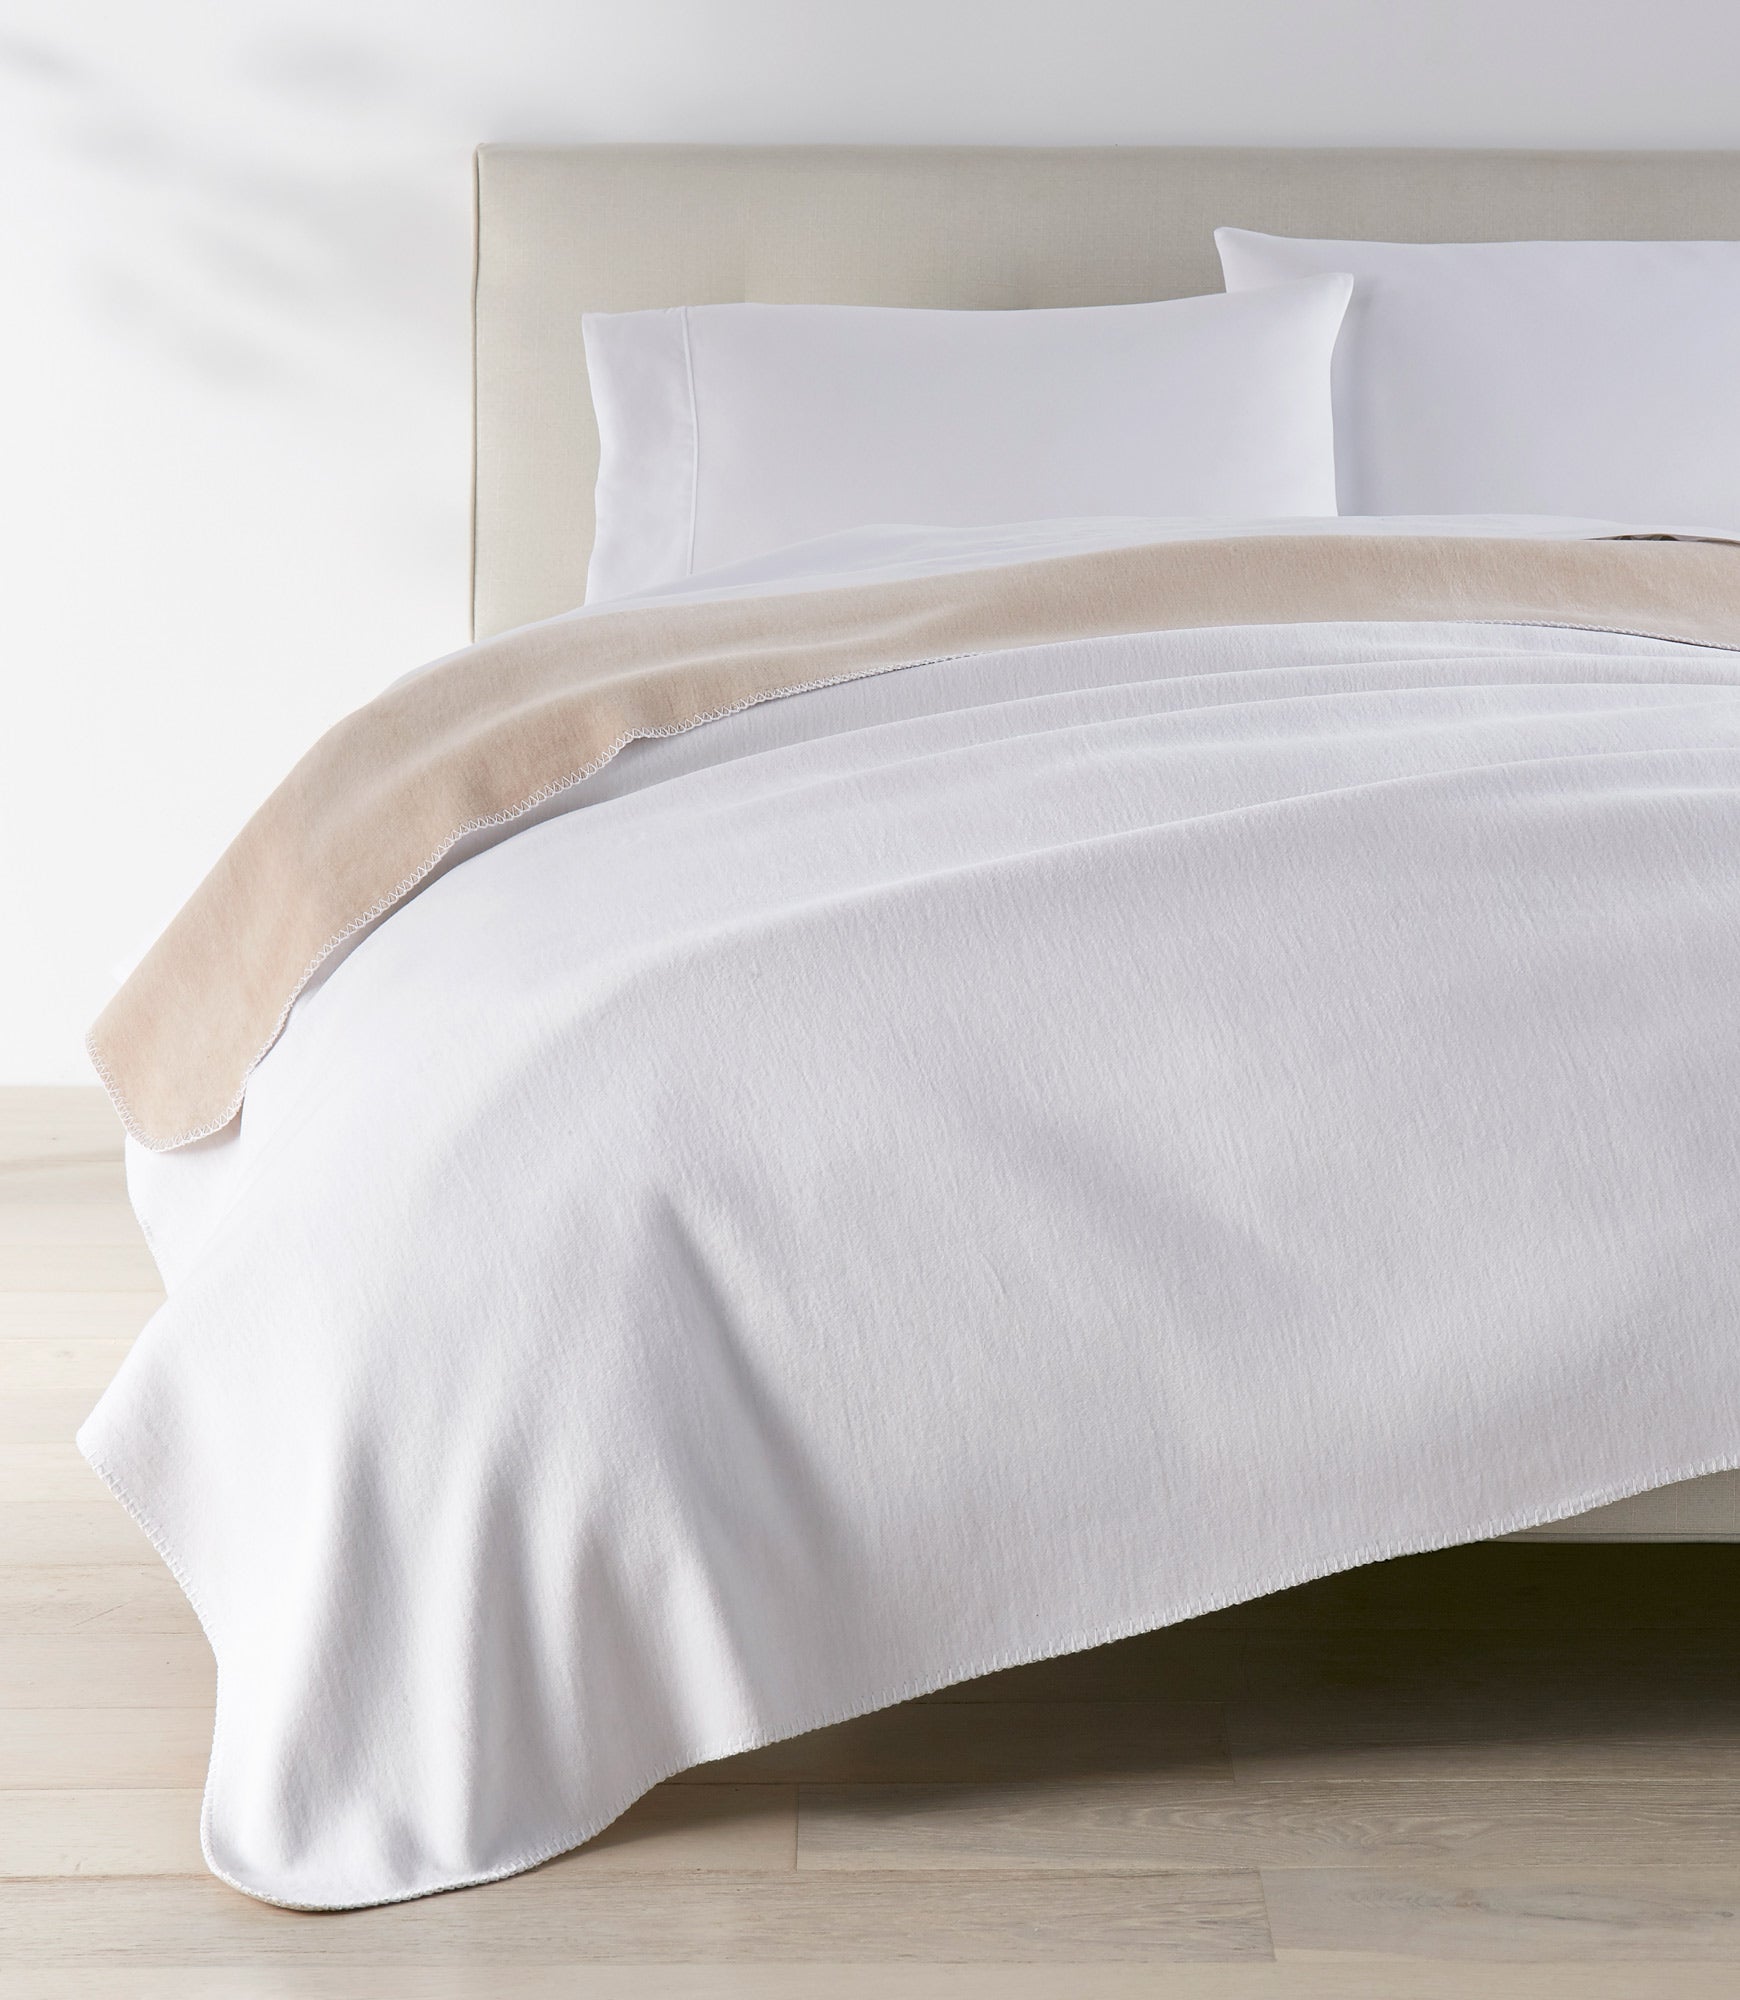 Alta Reversible Cotton Blanket White on White Bed